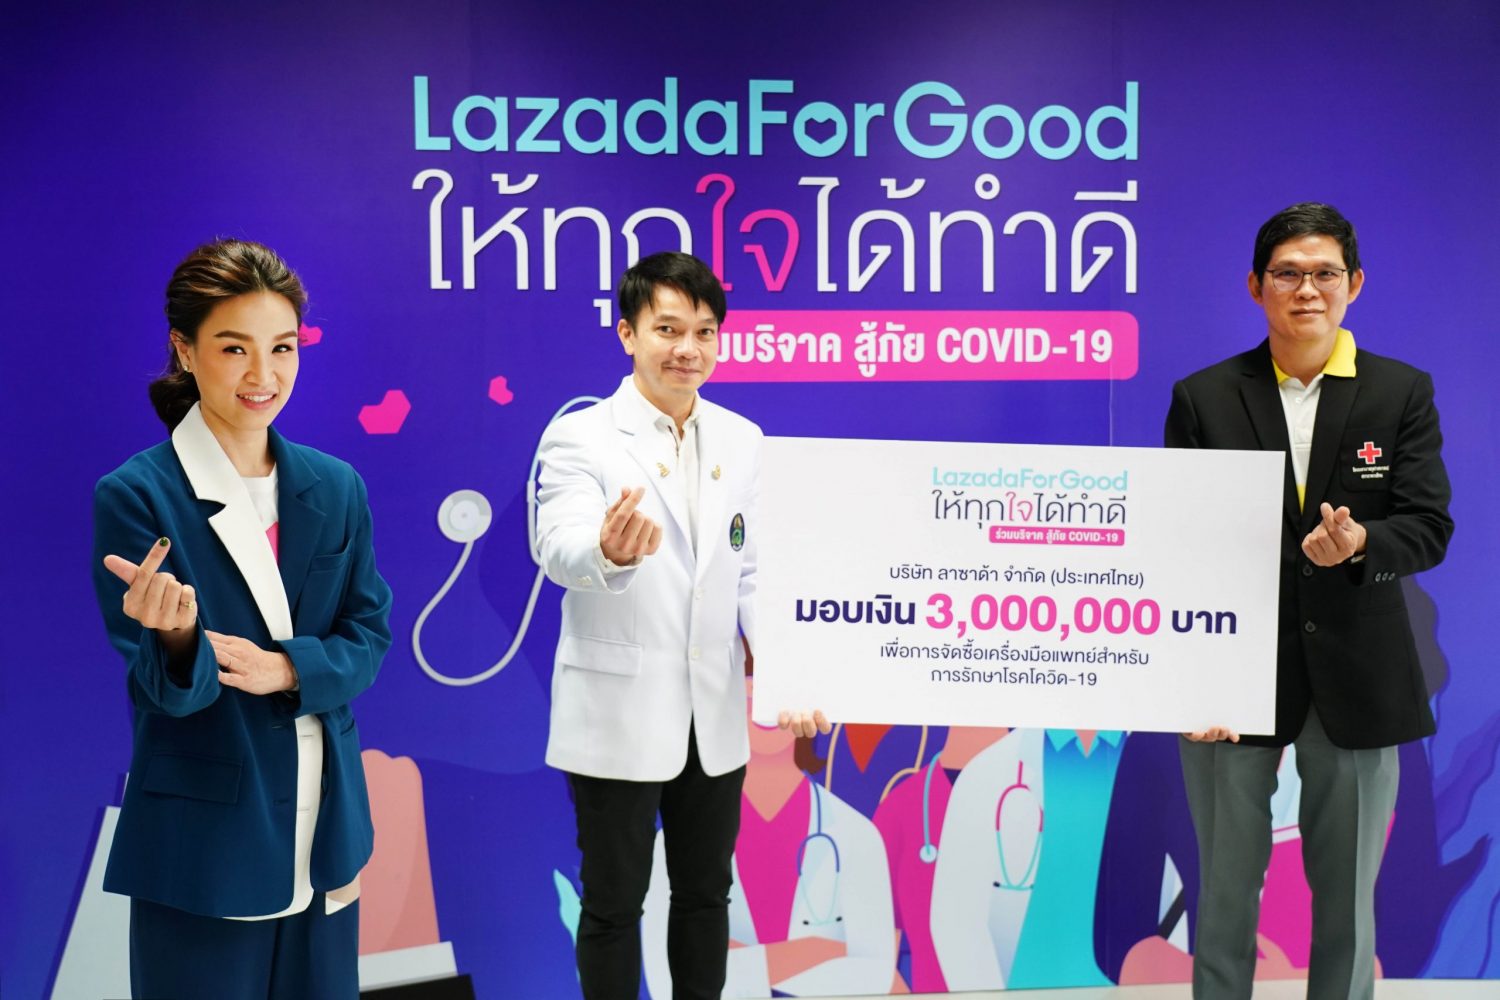 ลาซาด้า ประเทศไทย เปิดตัว LazadaForGood ให้ทุกใจได้ทำดี พร้อมมอบเงินบริจาครวม 3 ล้านบาทแก่โรงพยาบาล